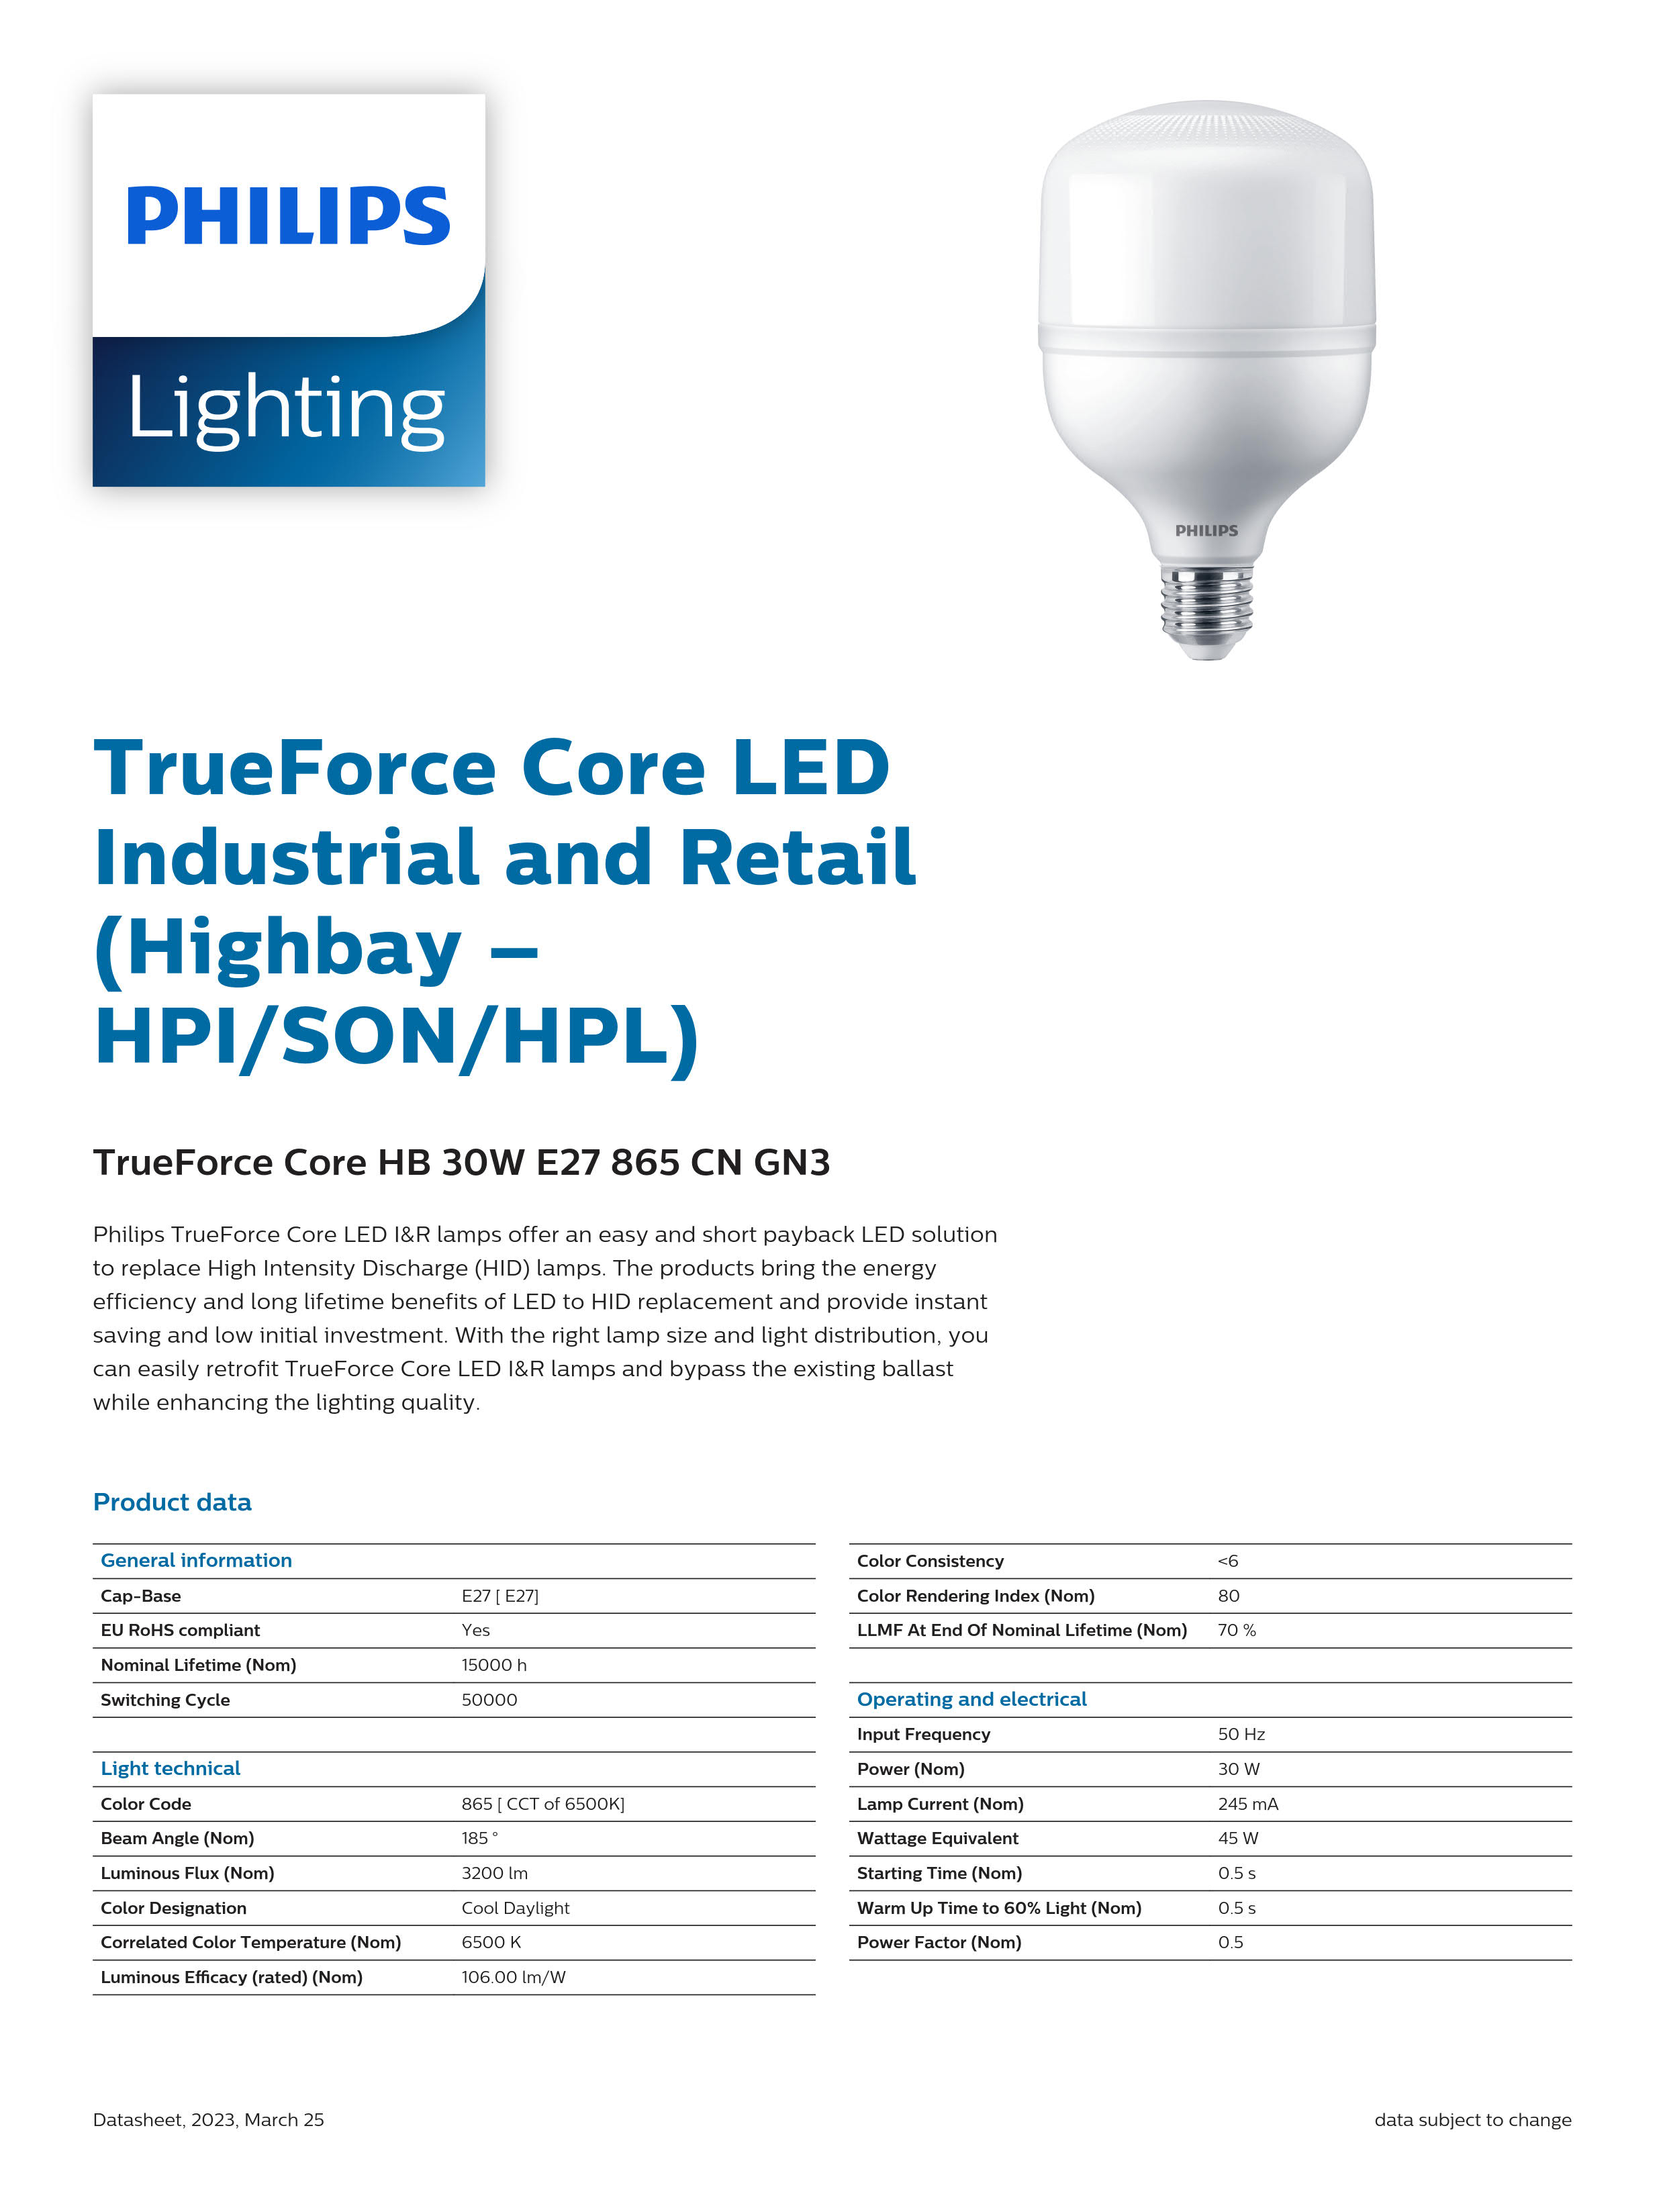 PHILIPS LED Bulb TrueForce Core HB 30W E27 865 CN GN3 929002408410